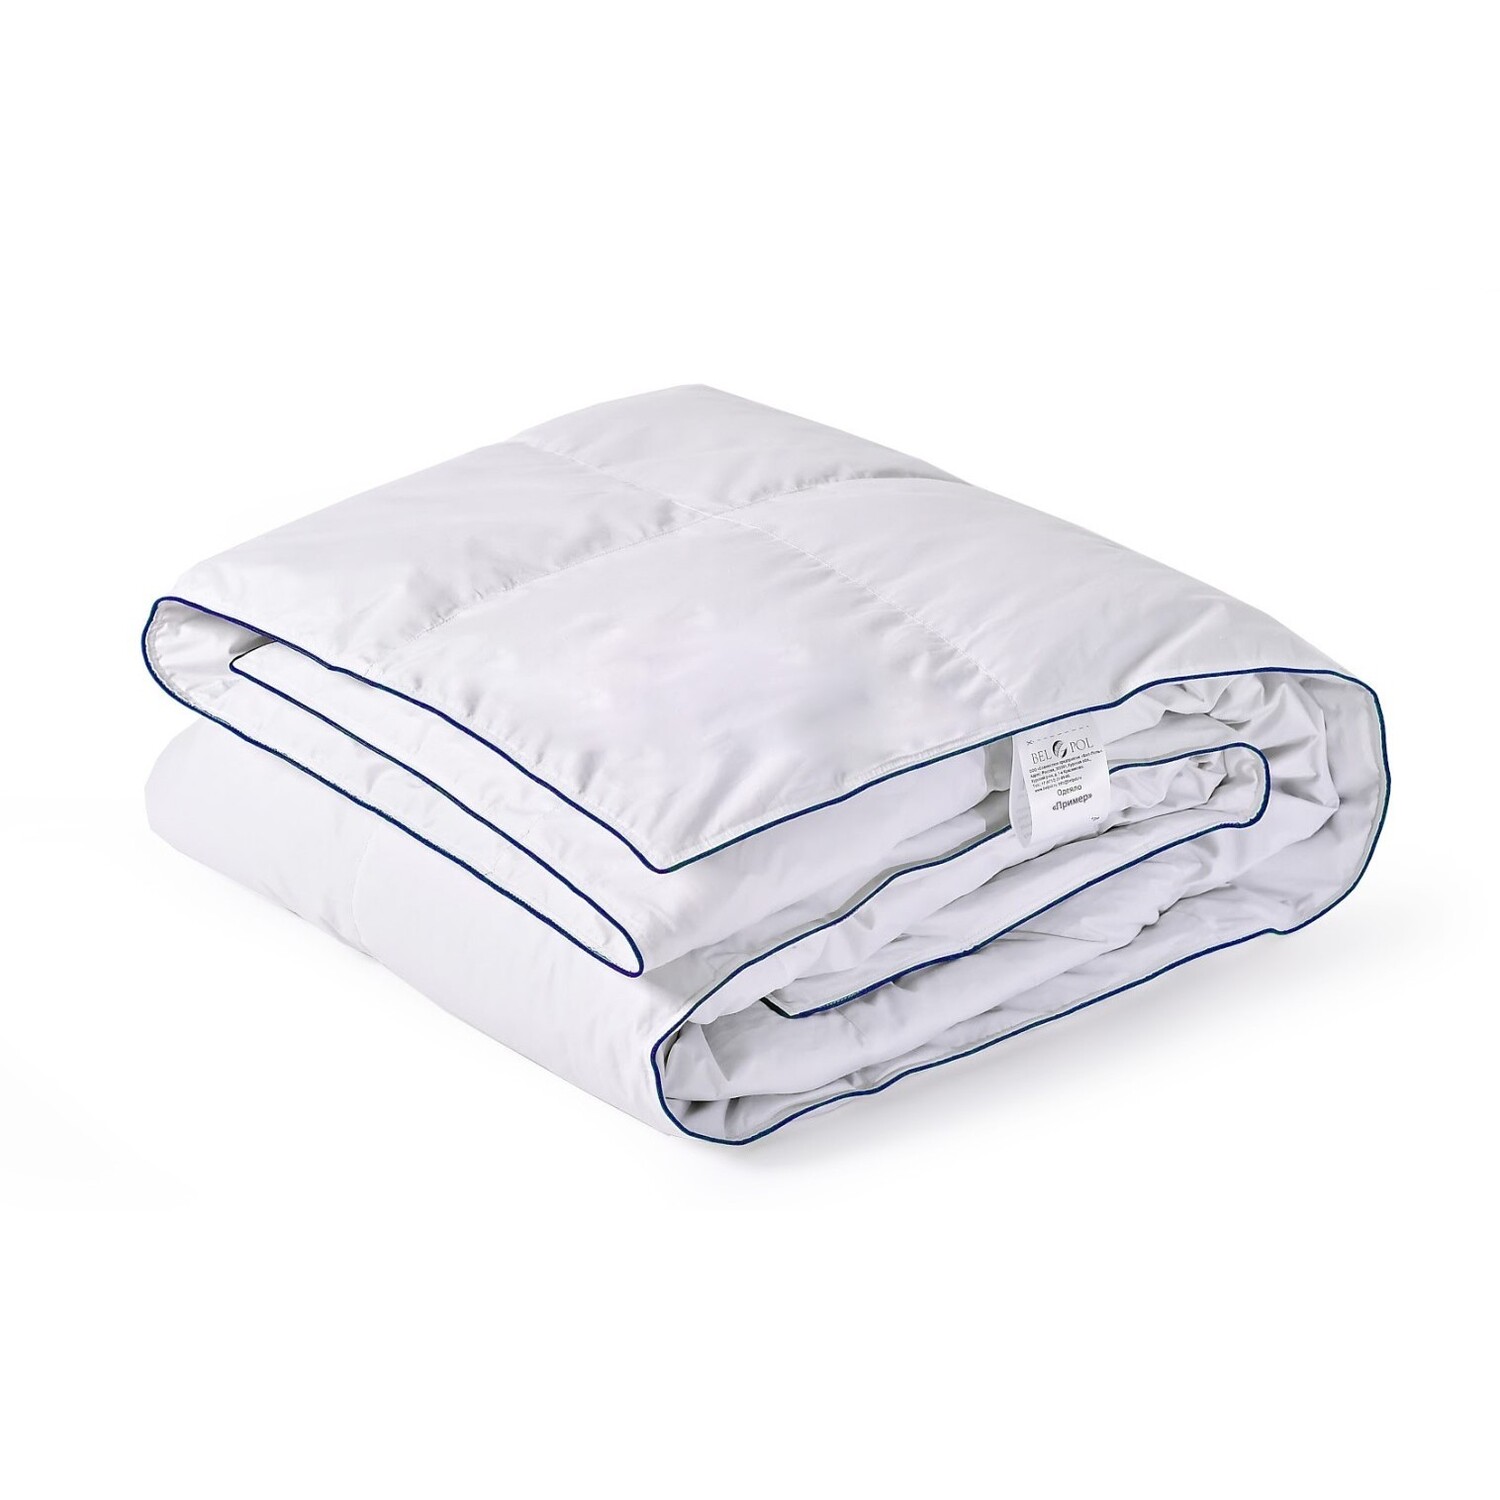 Одеяло Теплое Пример (172х205 см), размер 172х205 см bp616376 Одеяло Теплое Пример (172х205 см) - фото 1